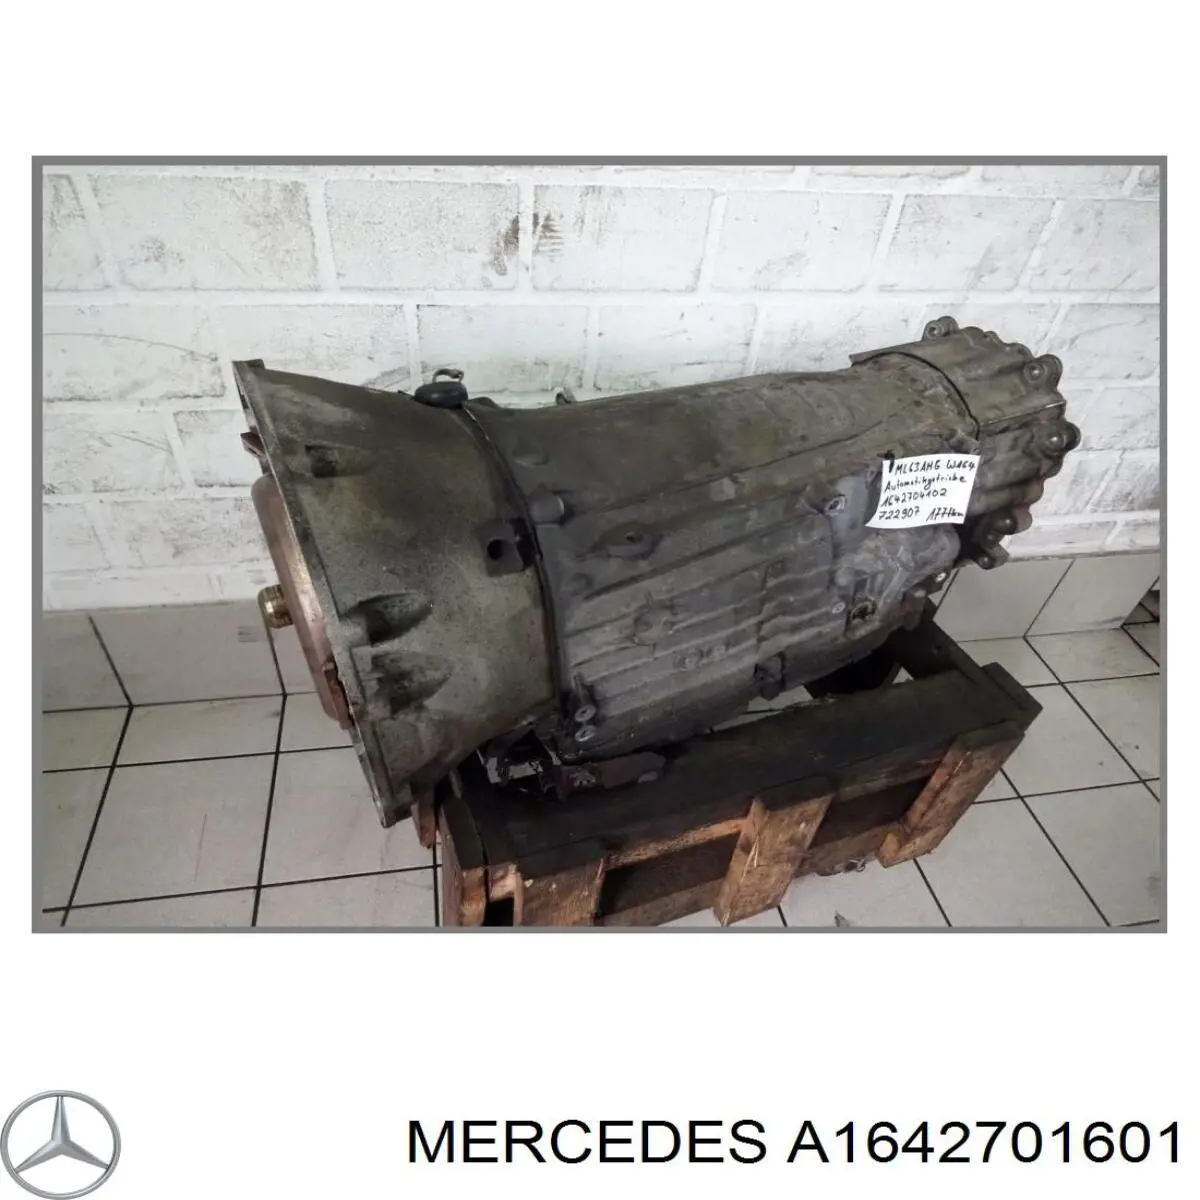 A1642701601 Mercedes акпп в сборе (автоматическая коробка передач)